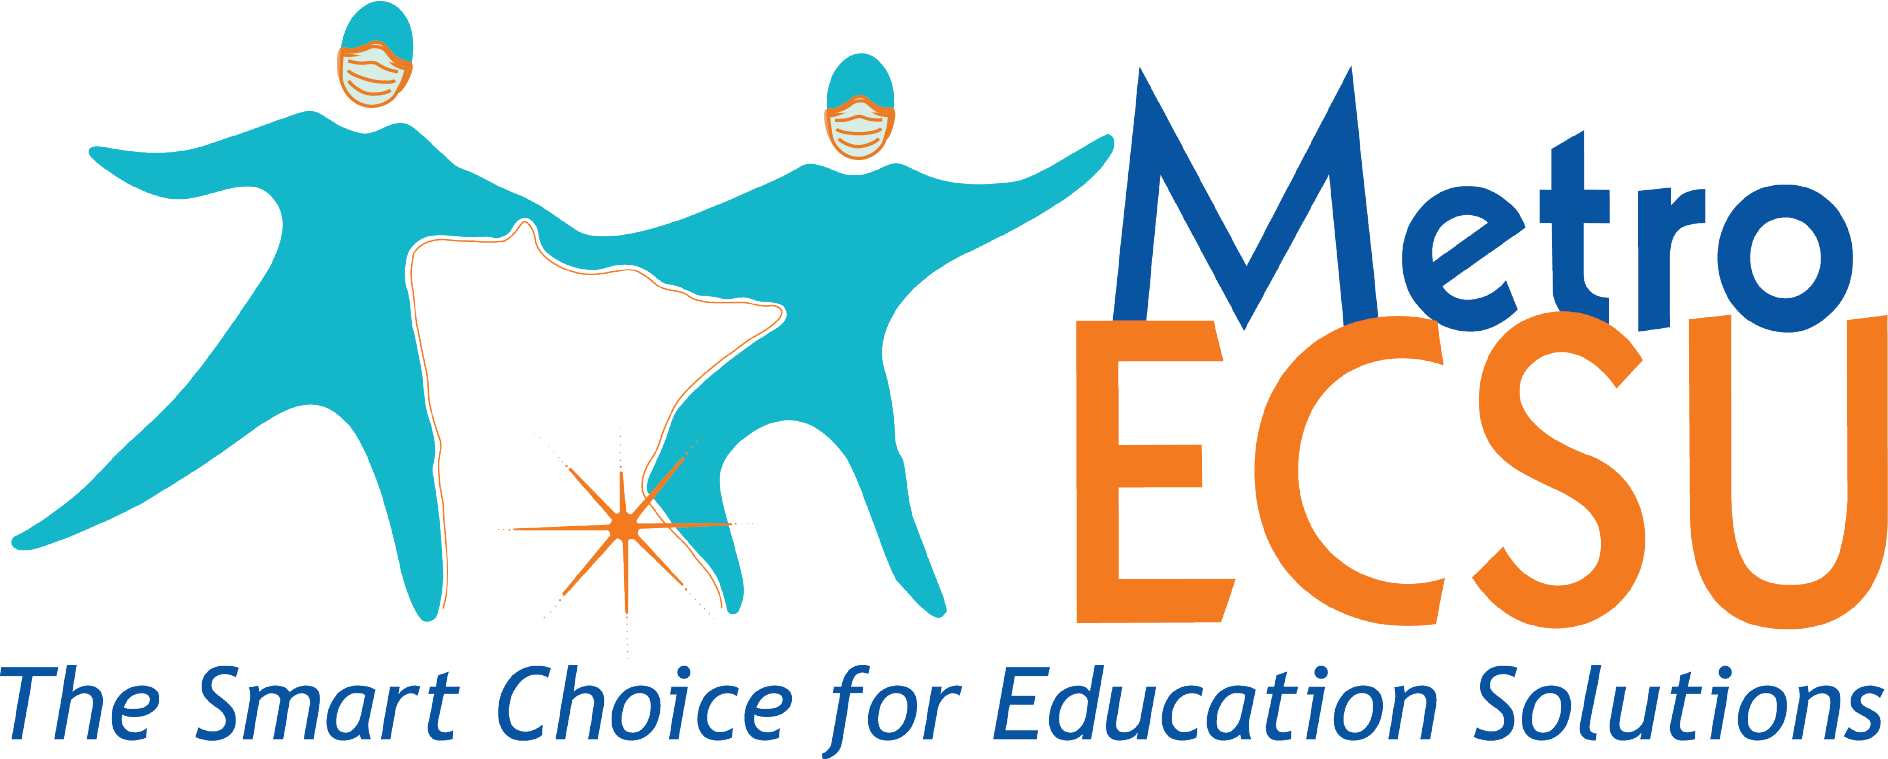 Metro ECSU logo with people wearing masks